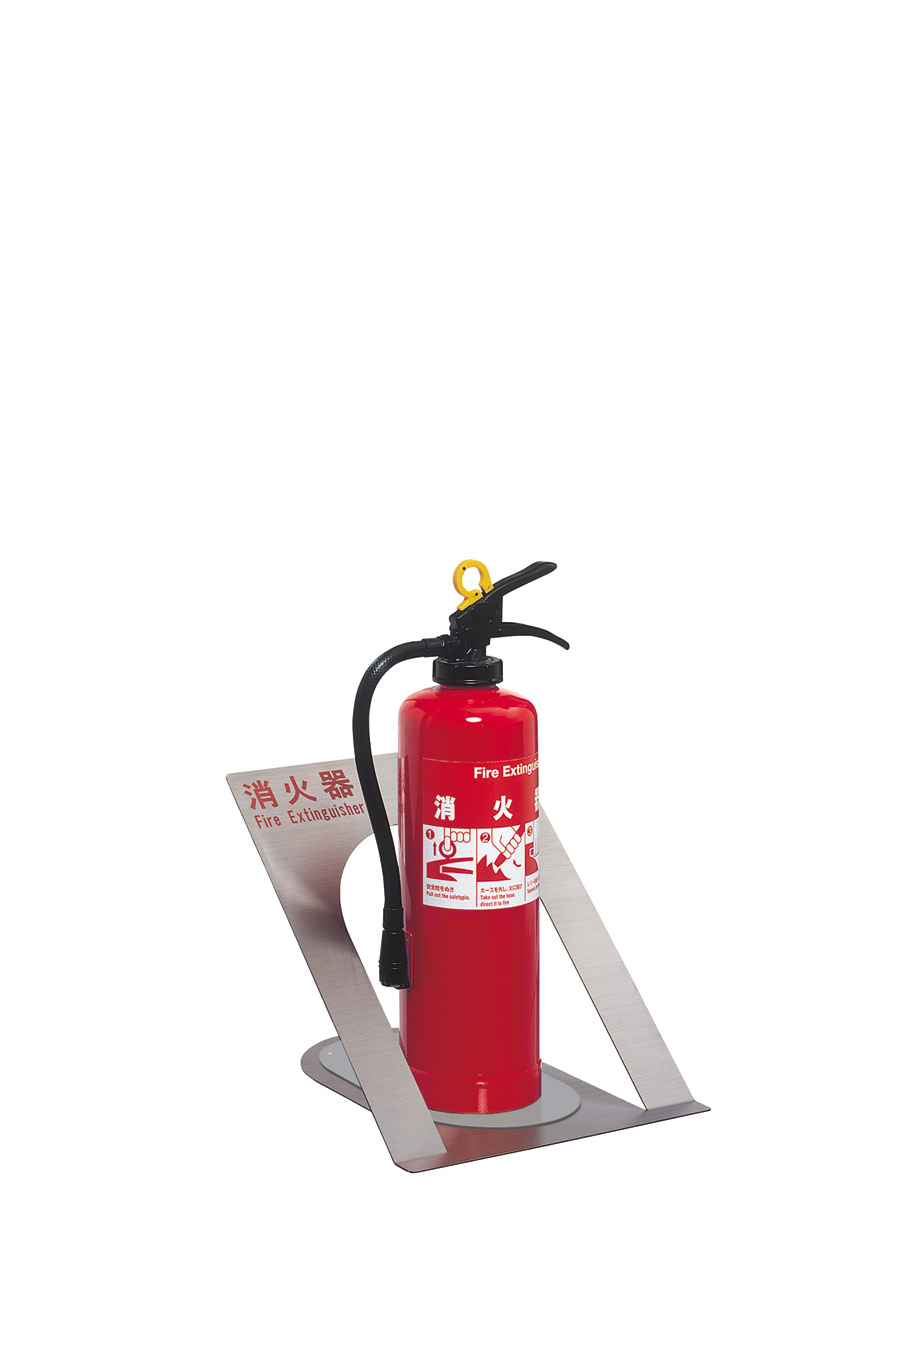 UNION(ユニオン) 床置消火器ボックス[アルジャン] UFB-3S-826-HLN ステンレス ヘアライン 通販 